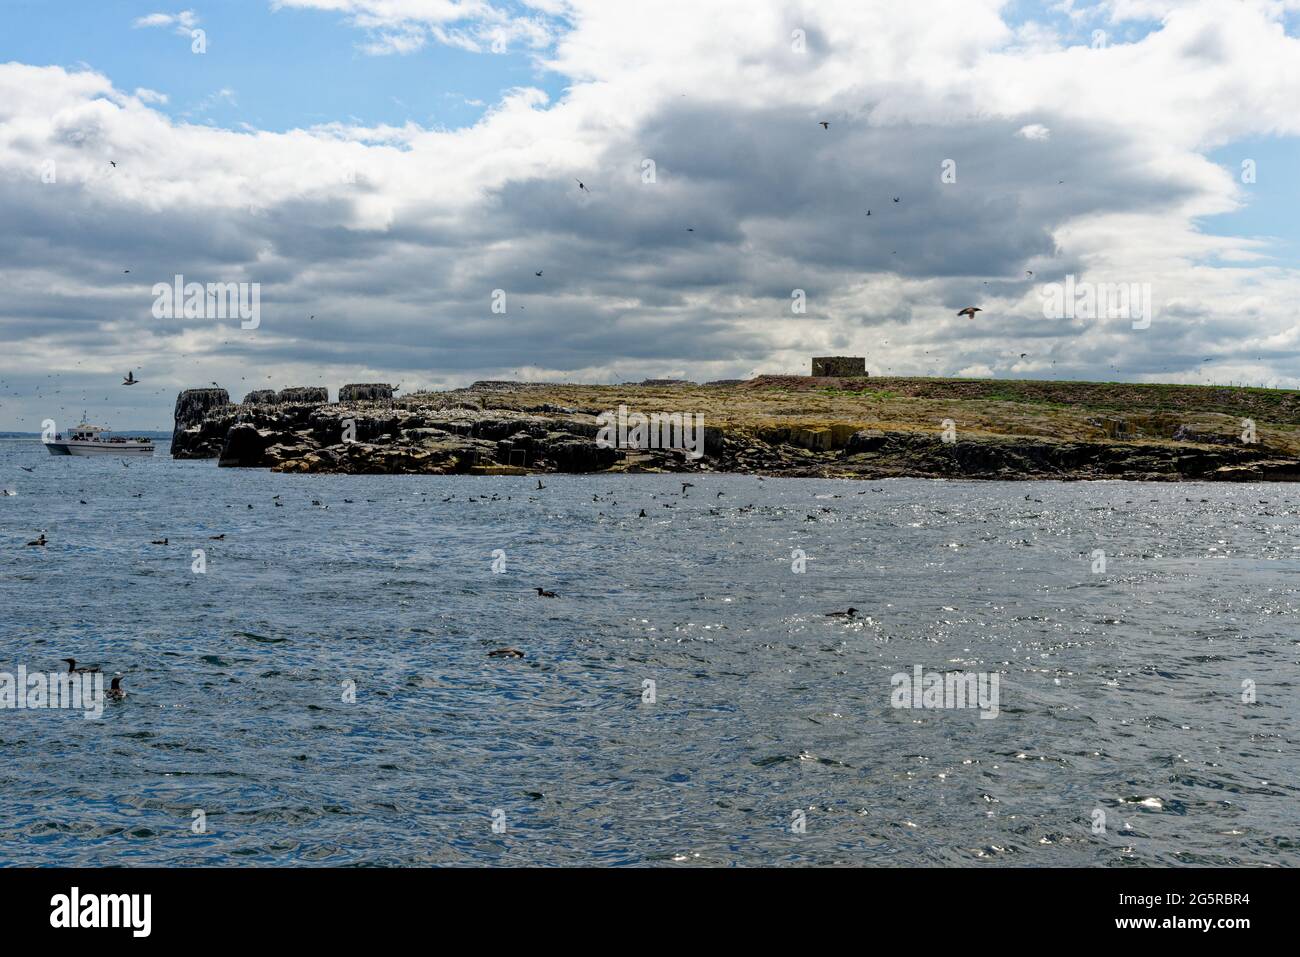 Observation des oiseaux sur les îles de Farne - Côte de Northumbrian - Royaume-Uni. Observation de la mer, des oiseaux de mer, des macareux et des oiseaux. 12 juin 2021 Banque D'Images